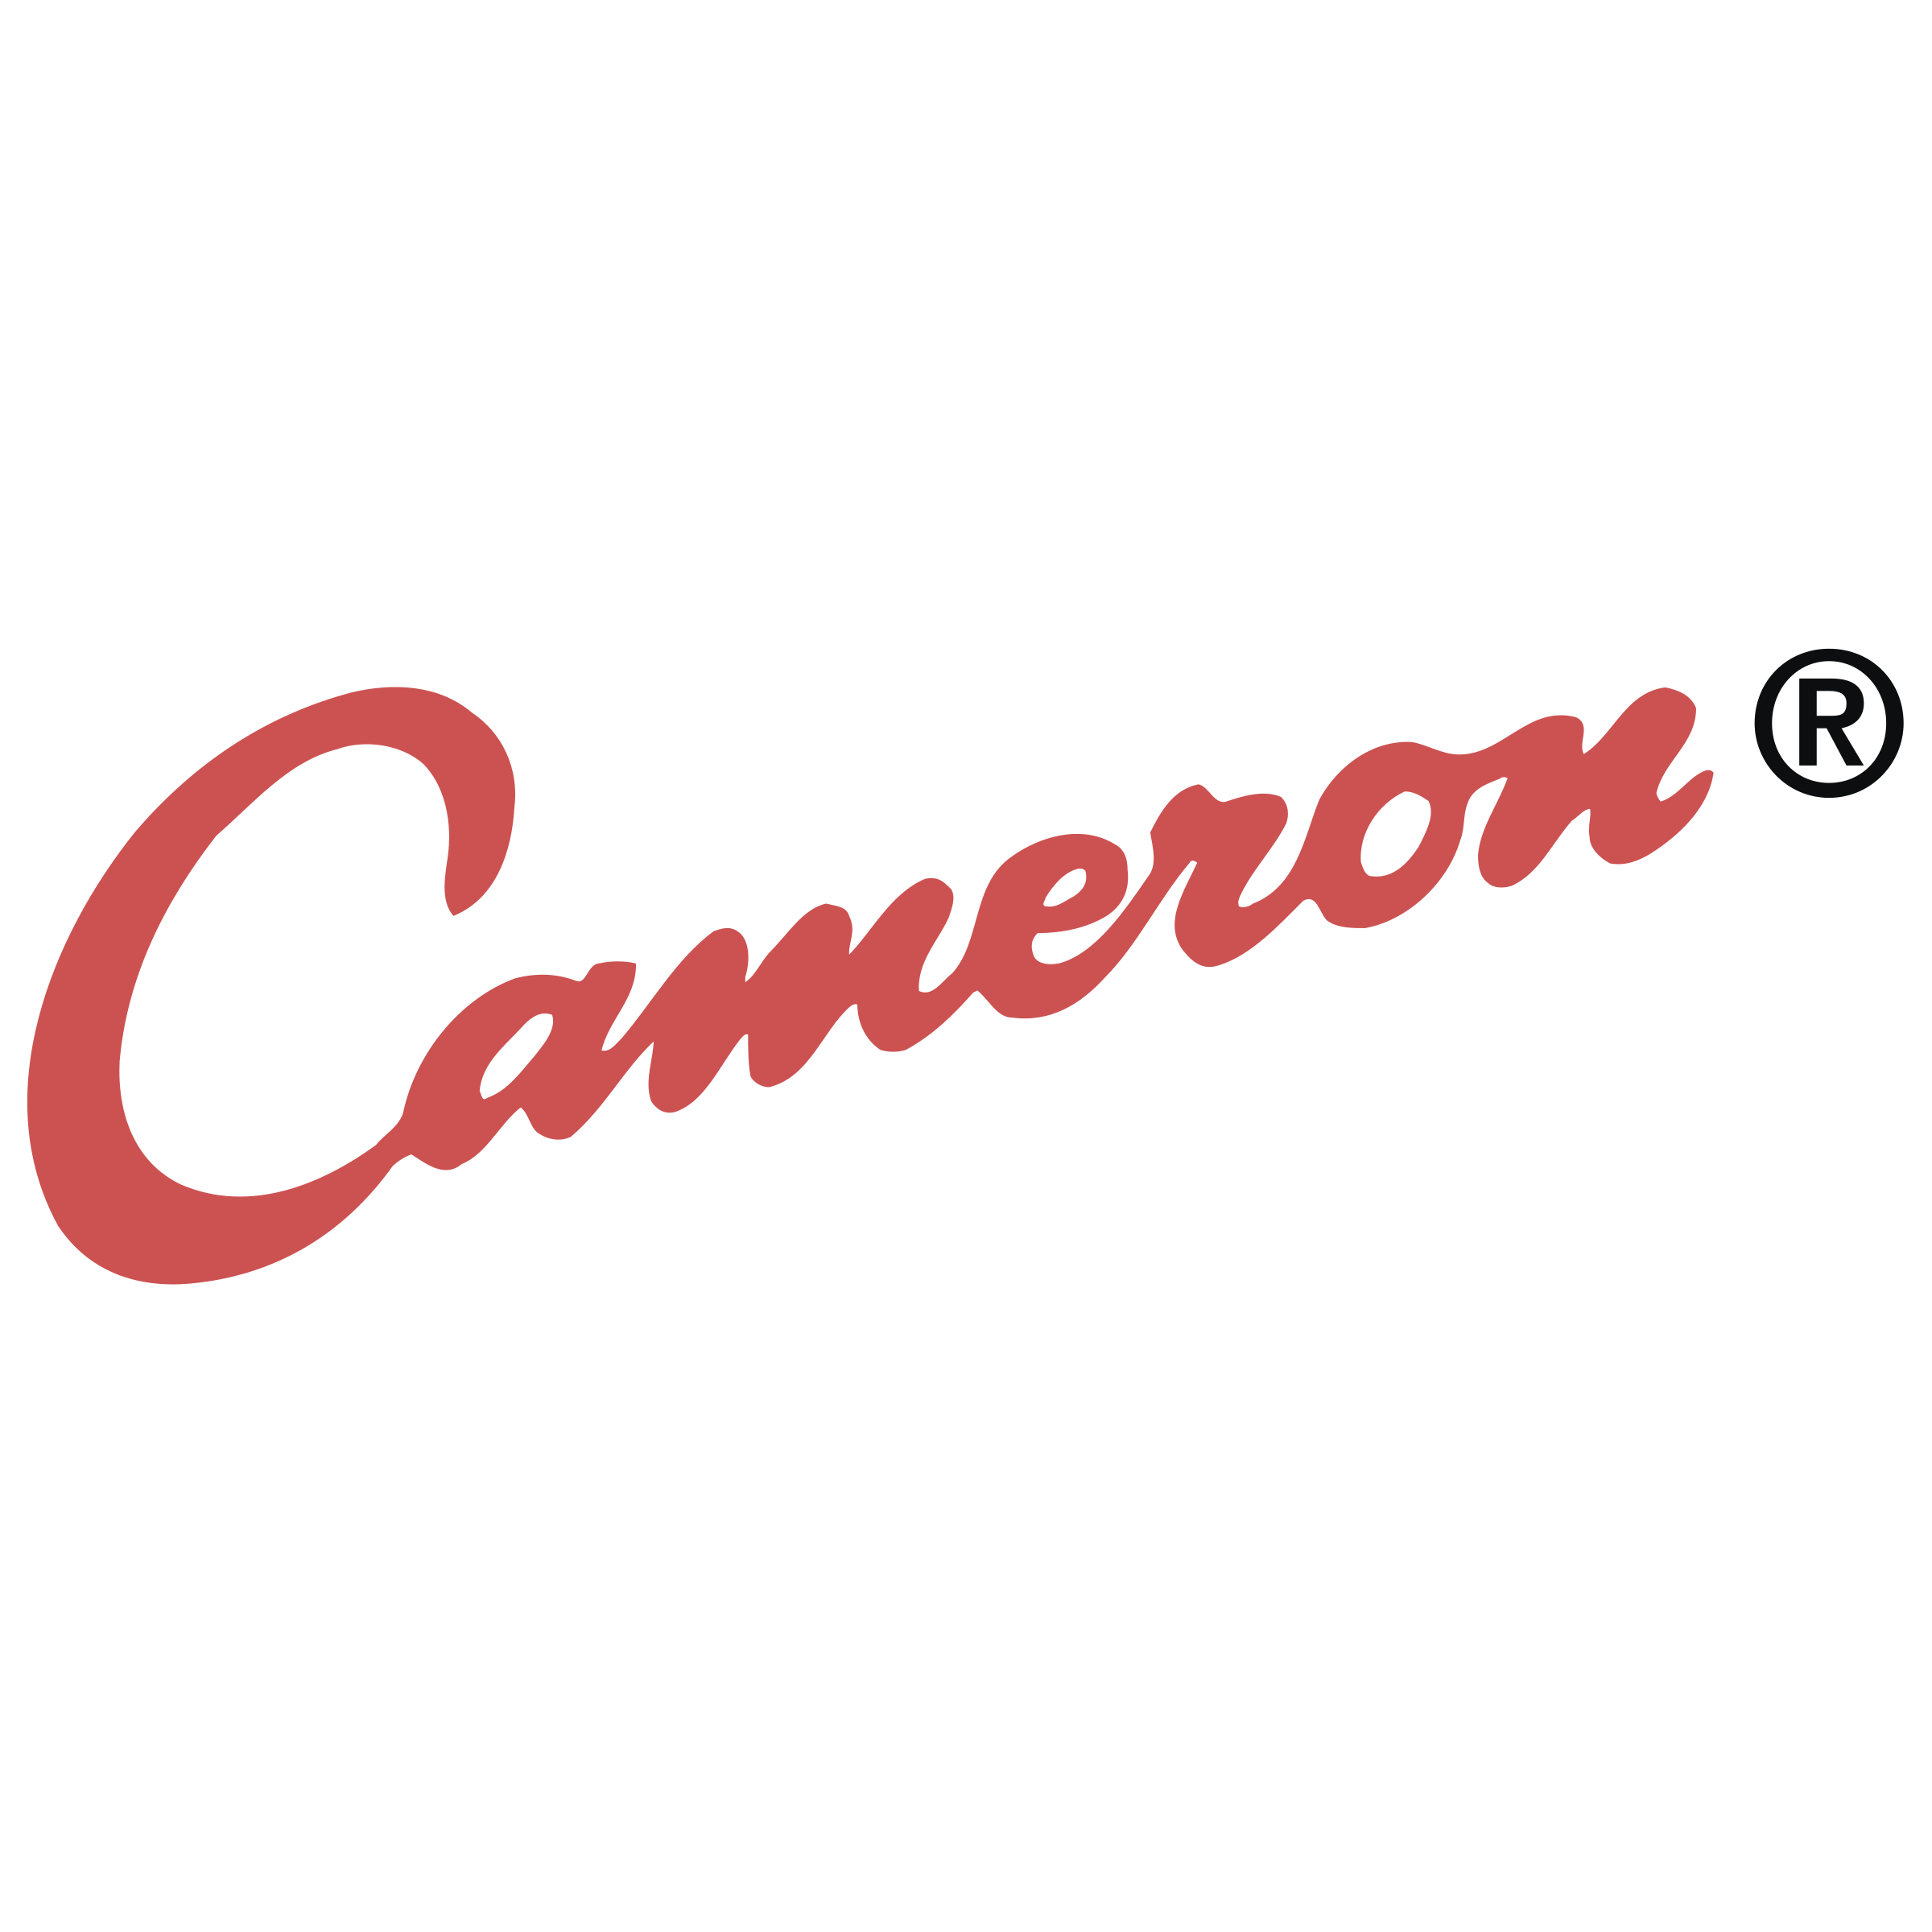 Cameron Logo - Cameron Logo PNG Transparent & SVG Vector - Freebie Supply